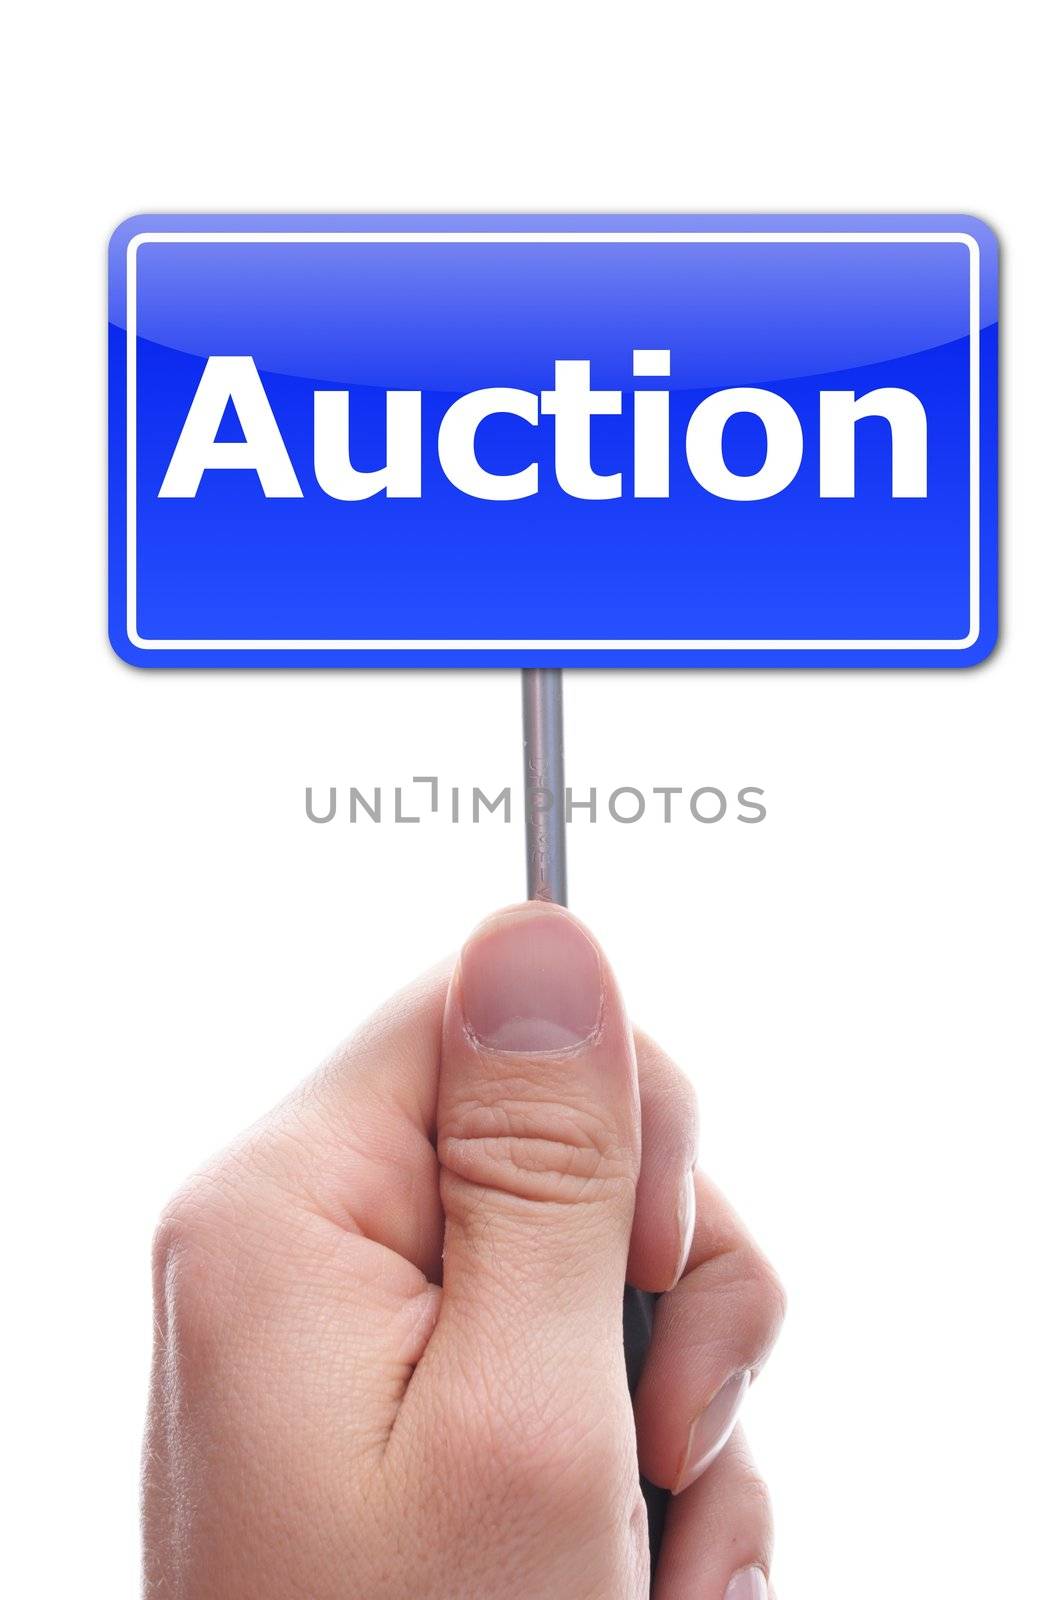 auction by gunnar3000